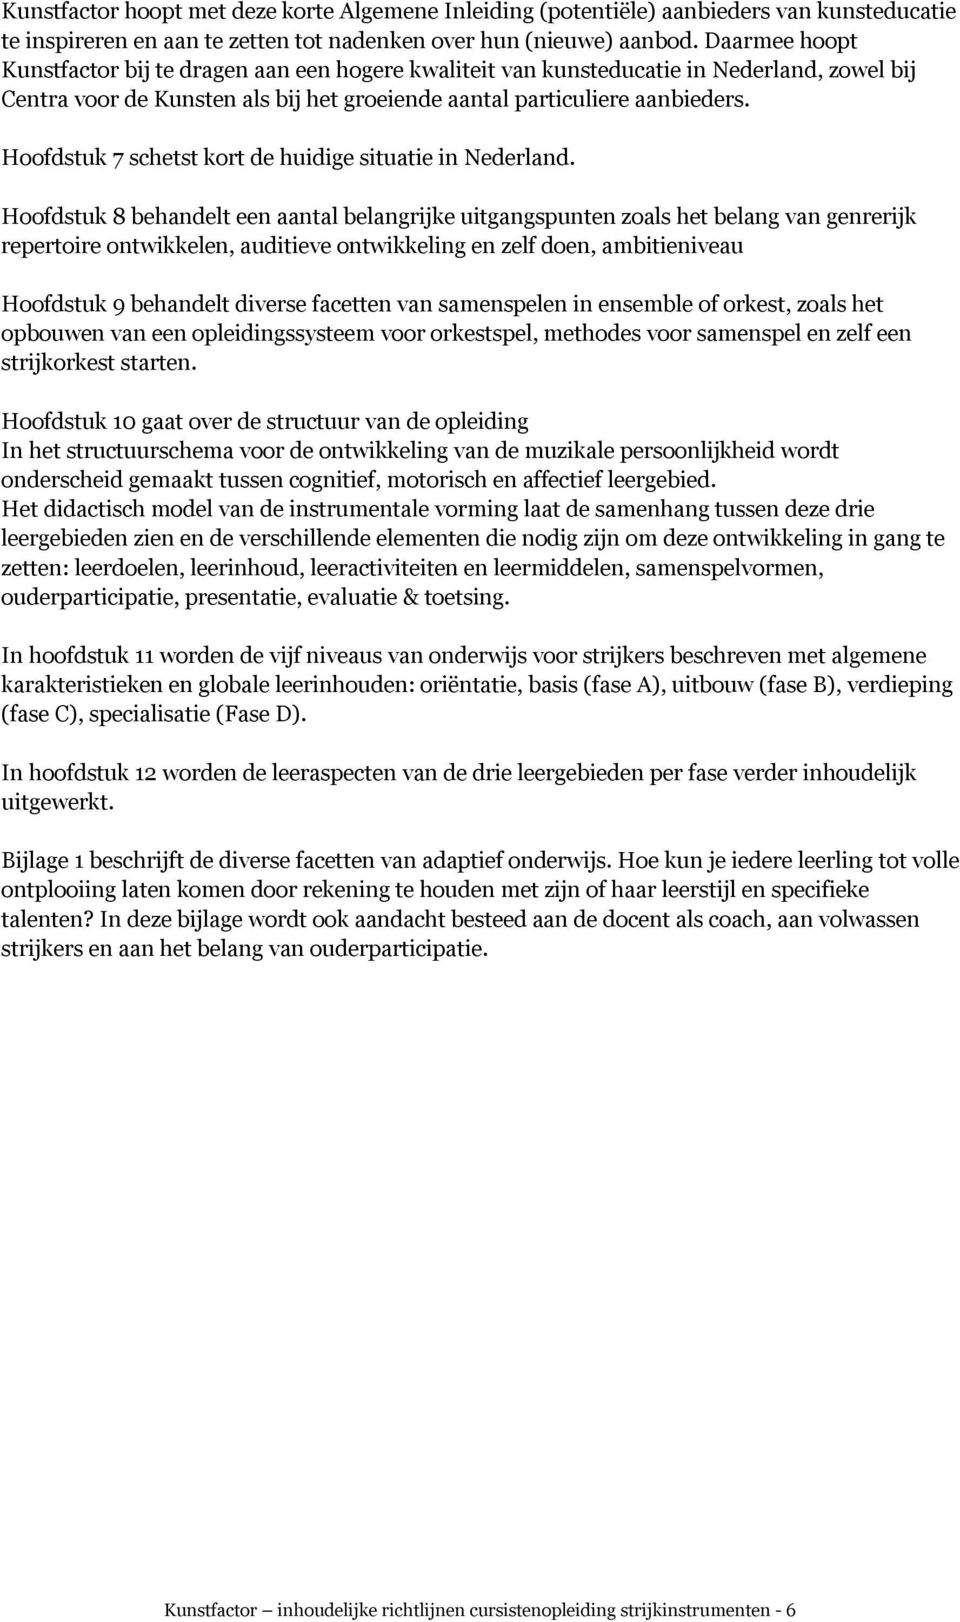 Hoofdstuk 7 schetst kort de huidige situatie in Nederland.